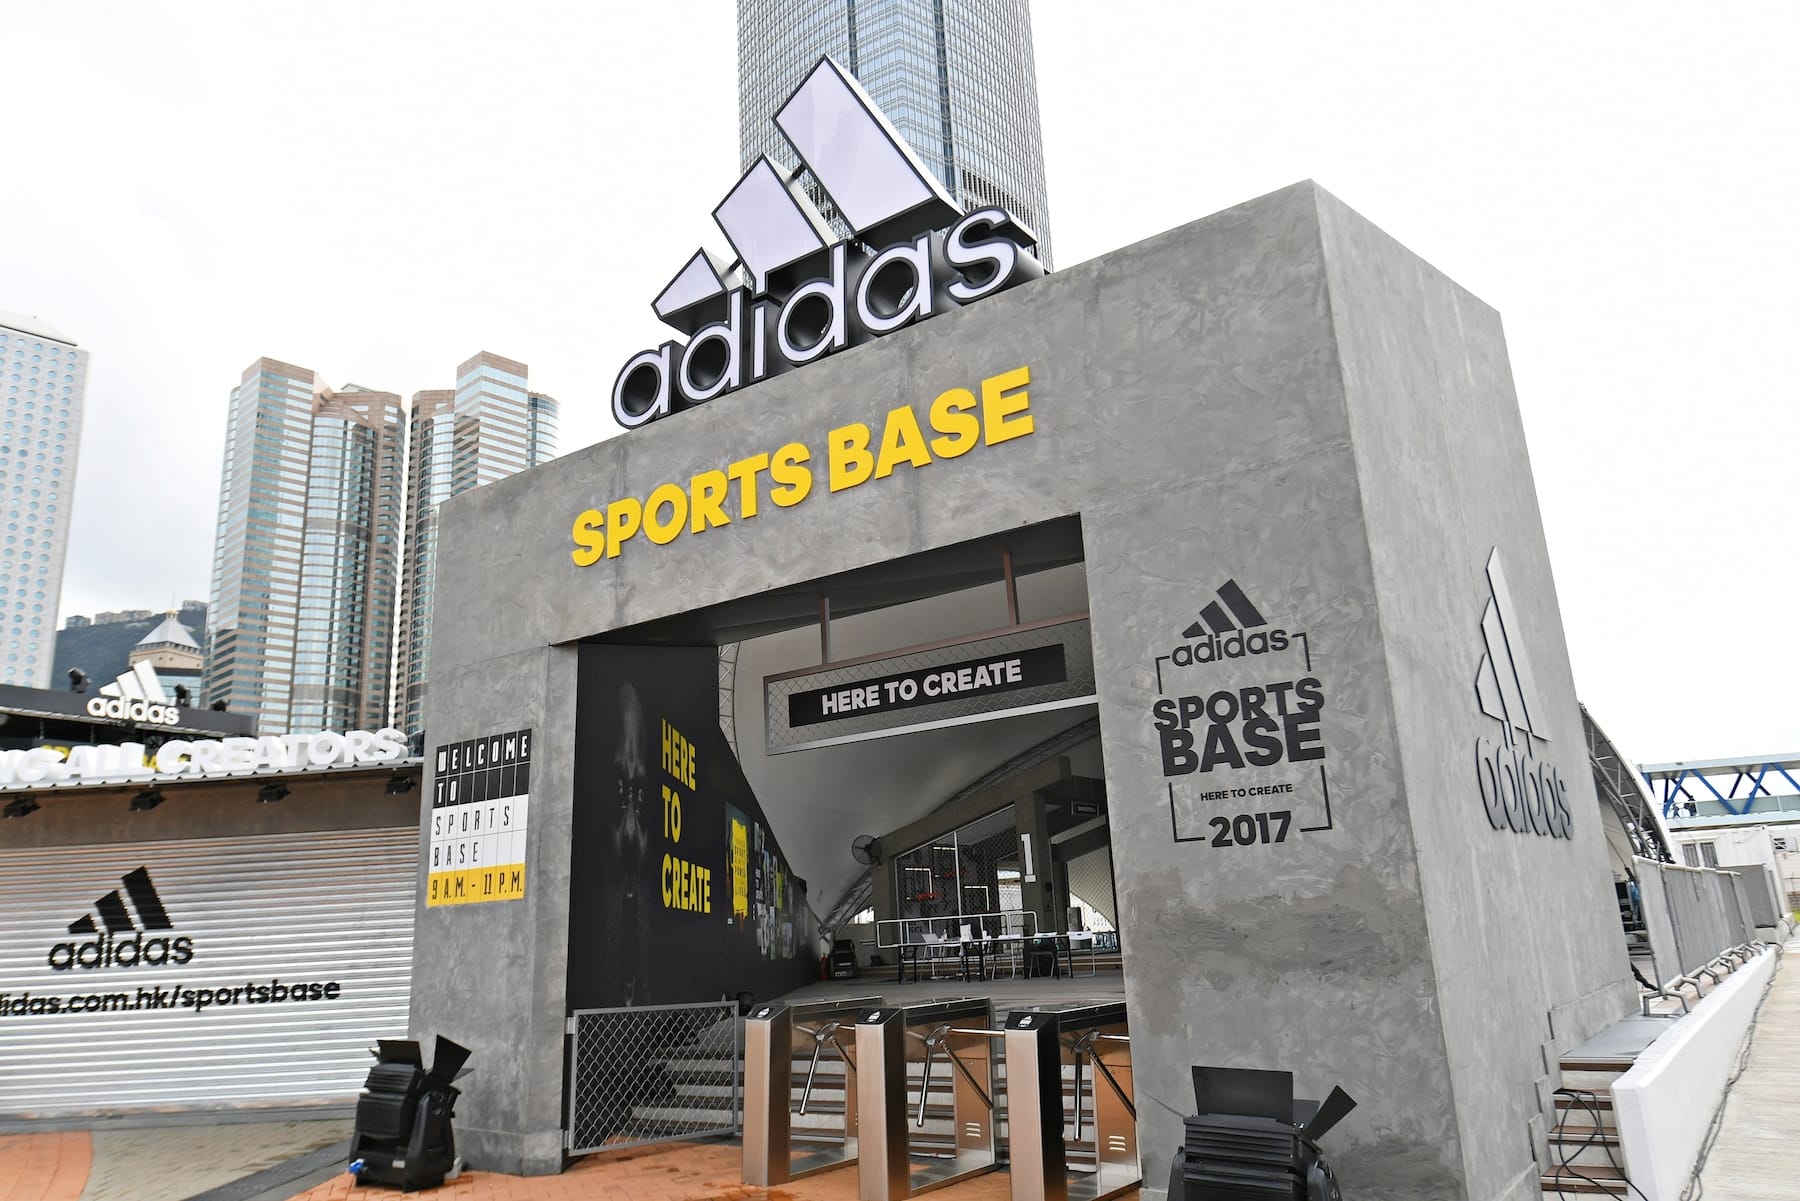 adidas sports base